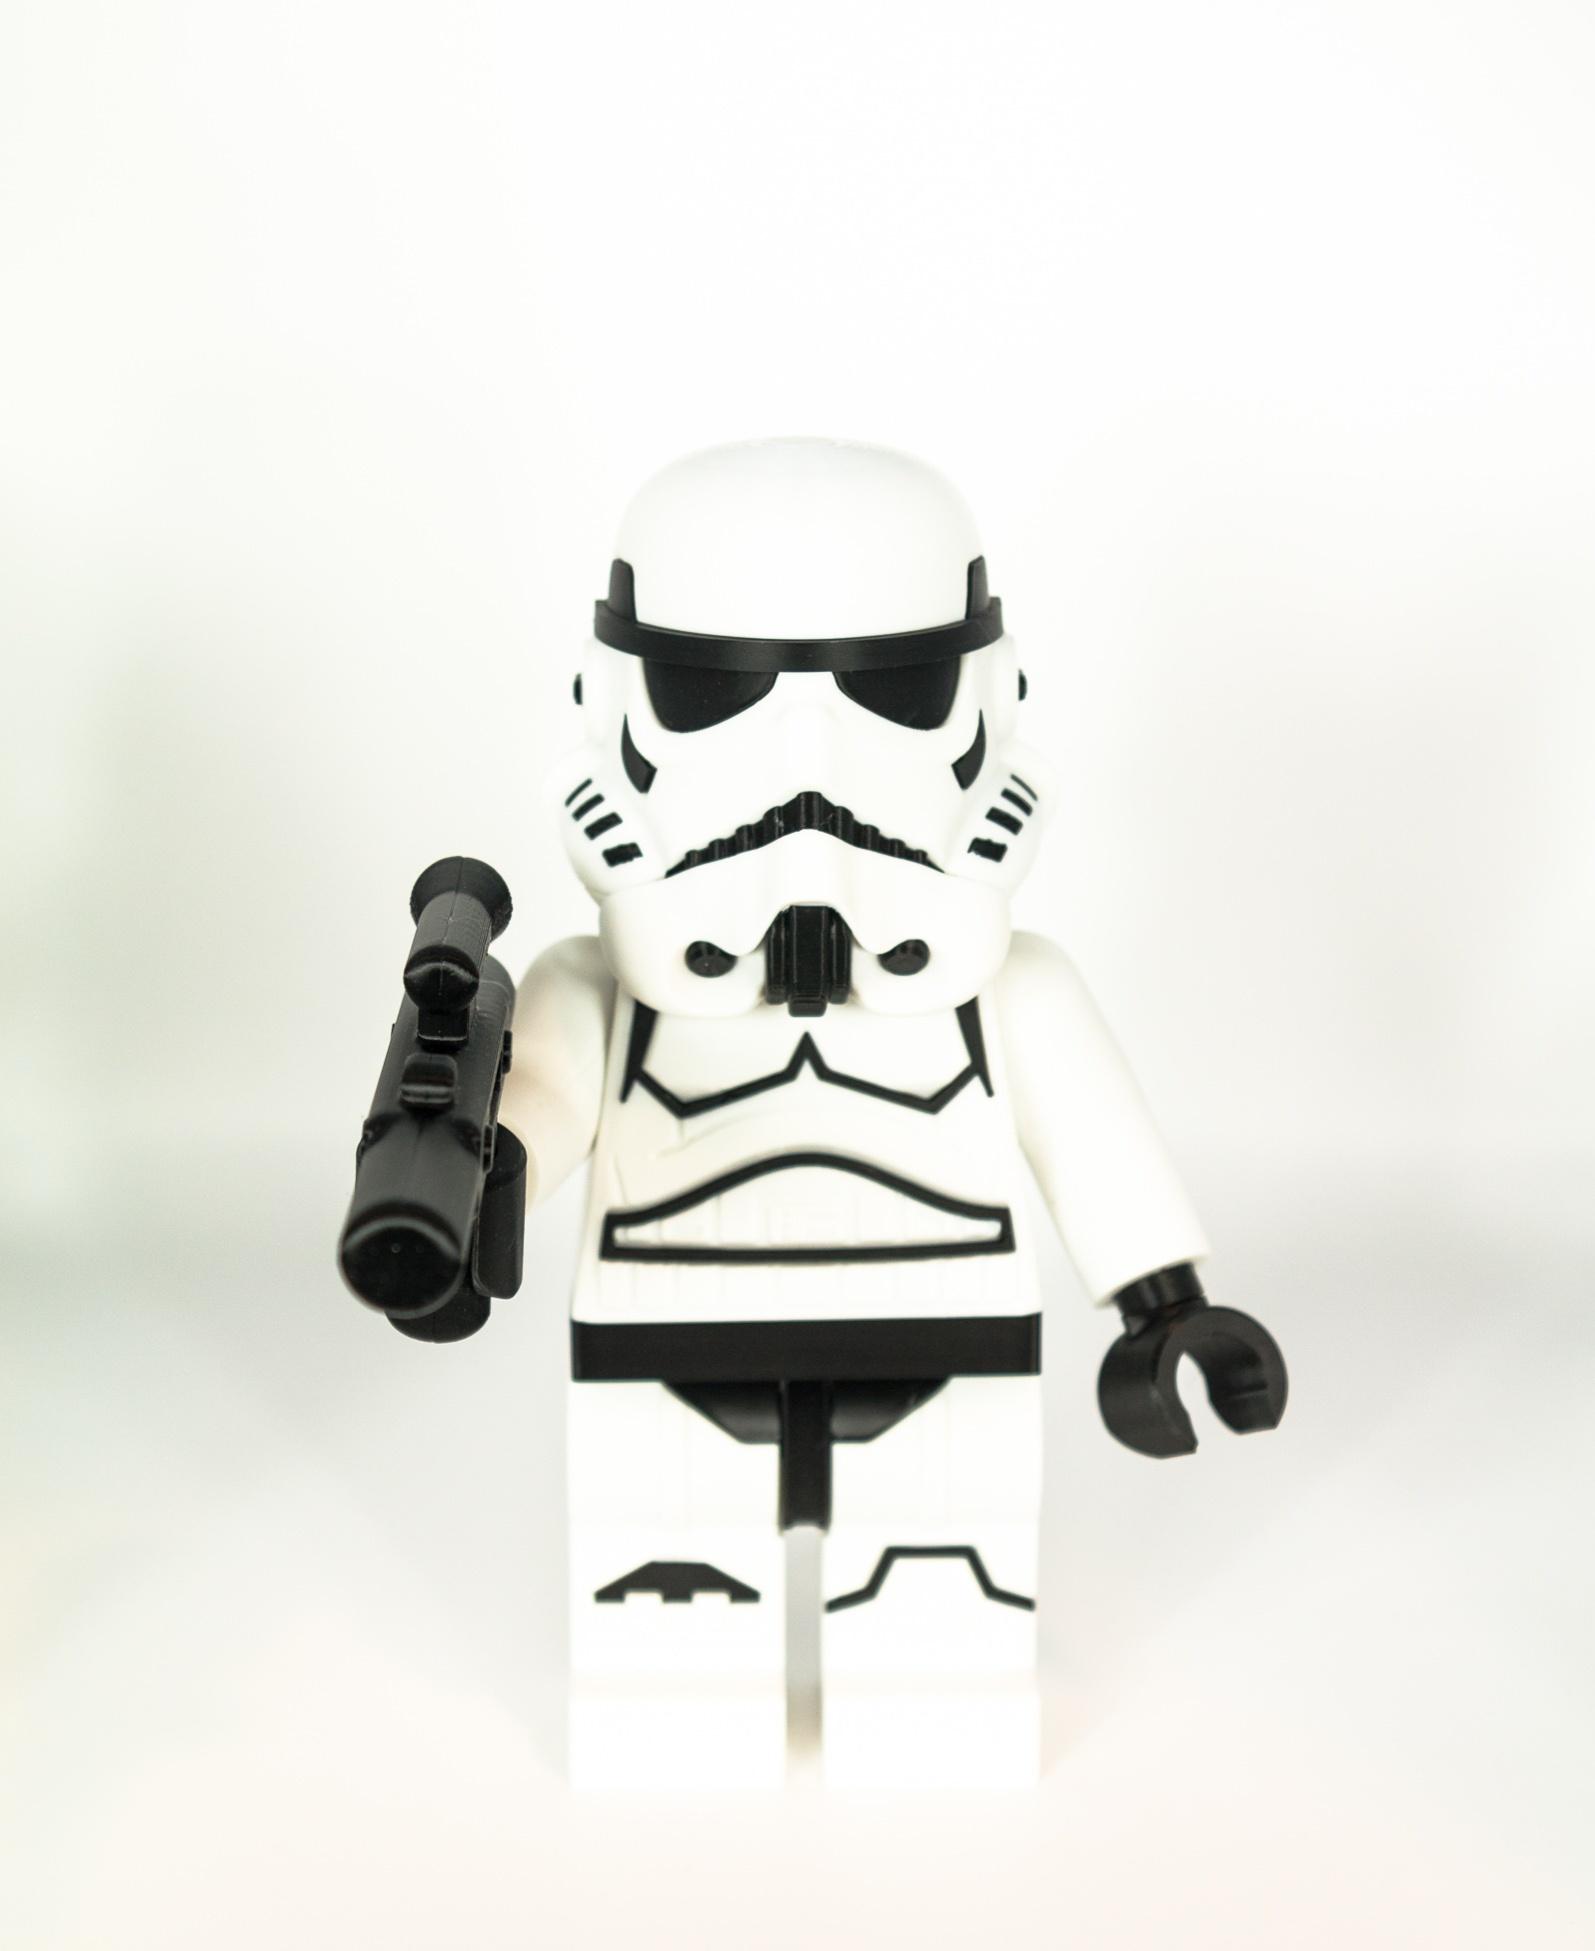 Stormtrooper (9 inch brick figure, NO MMU/AMS, NO supports, NO glue) 3d model